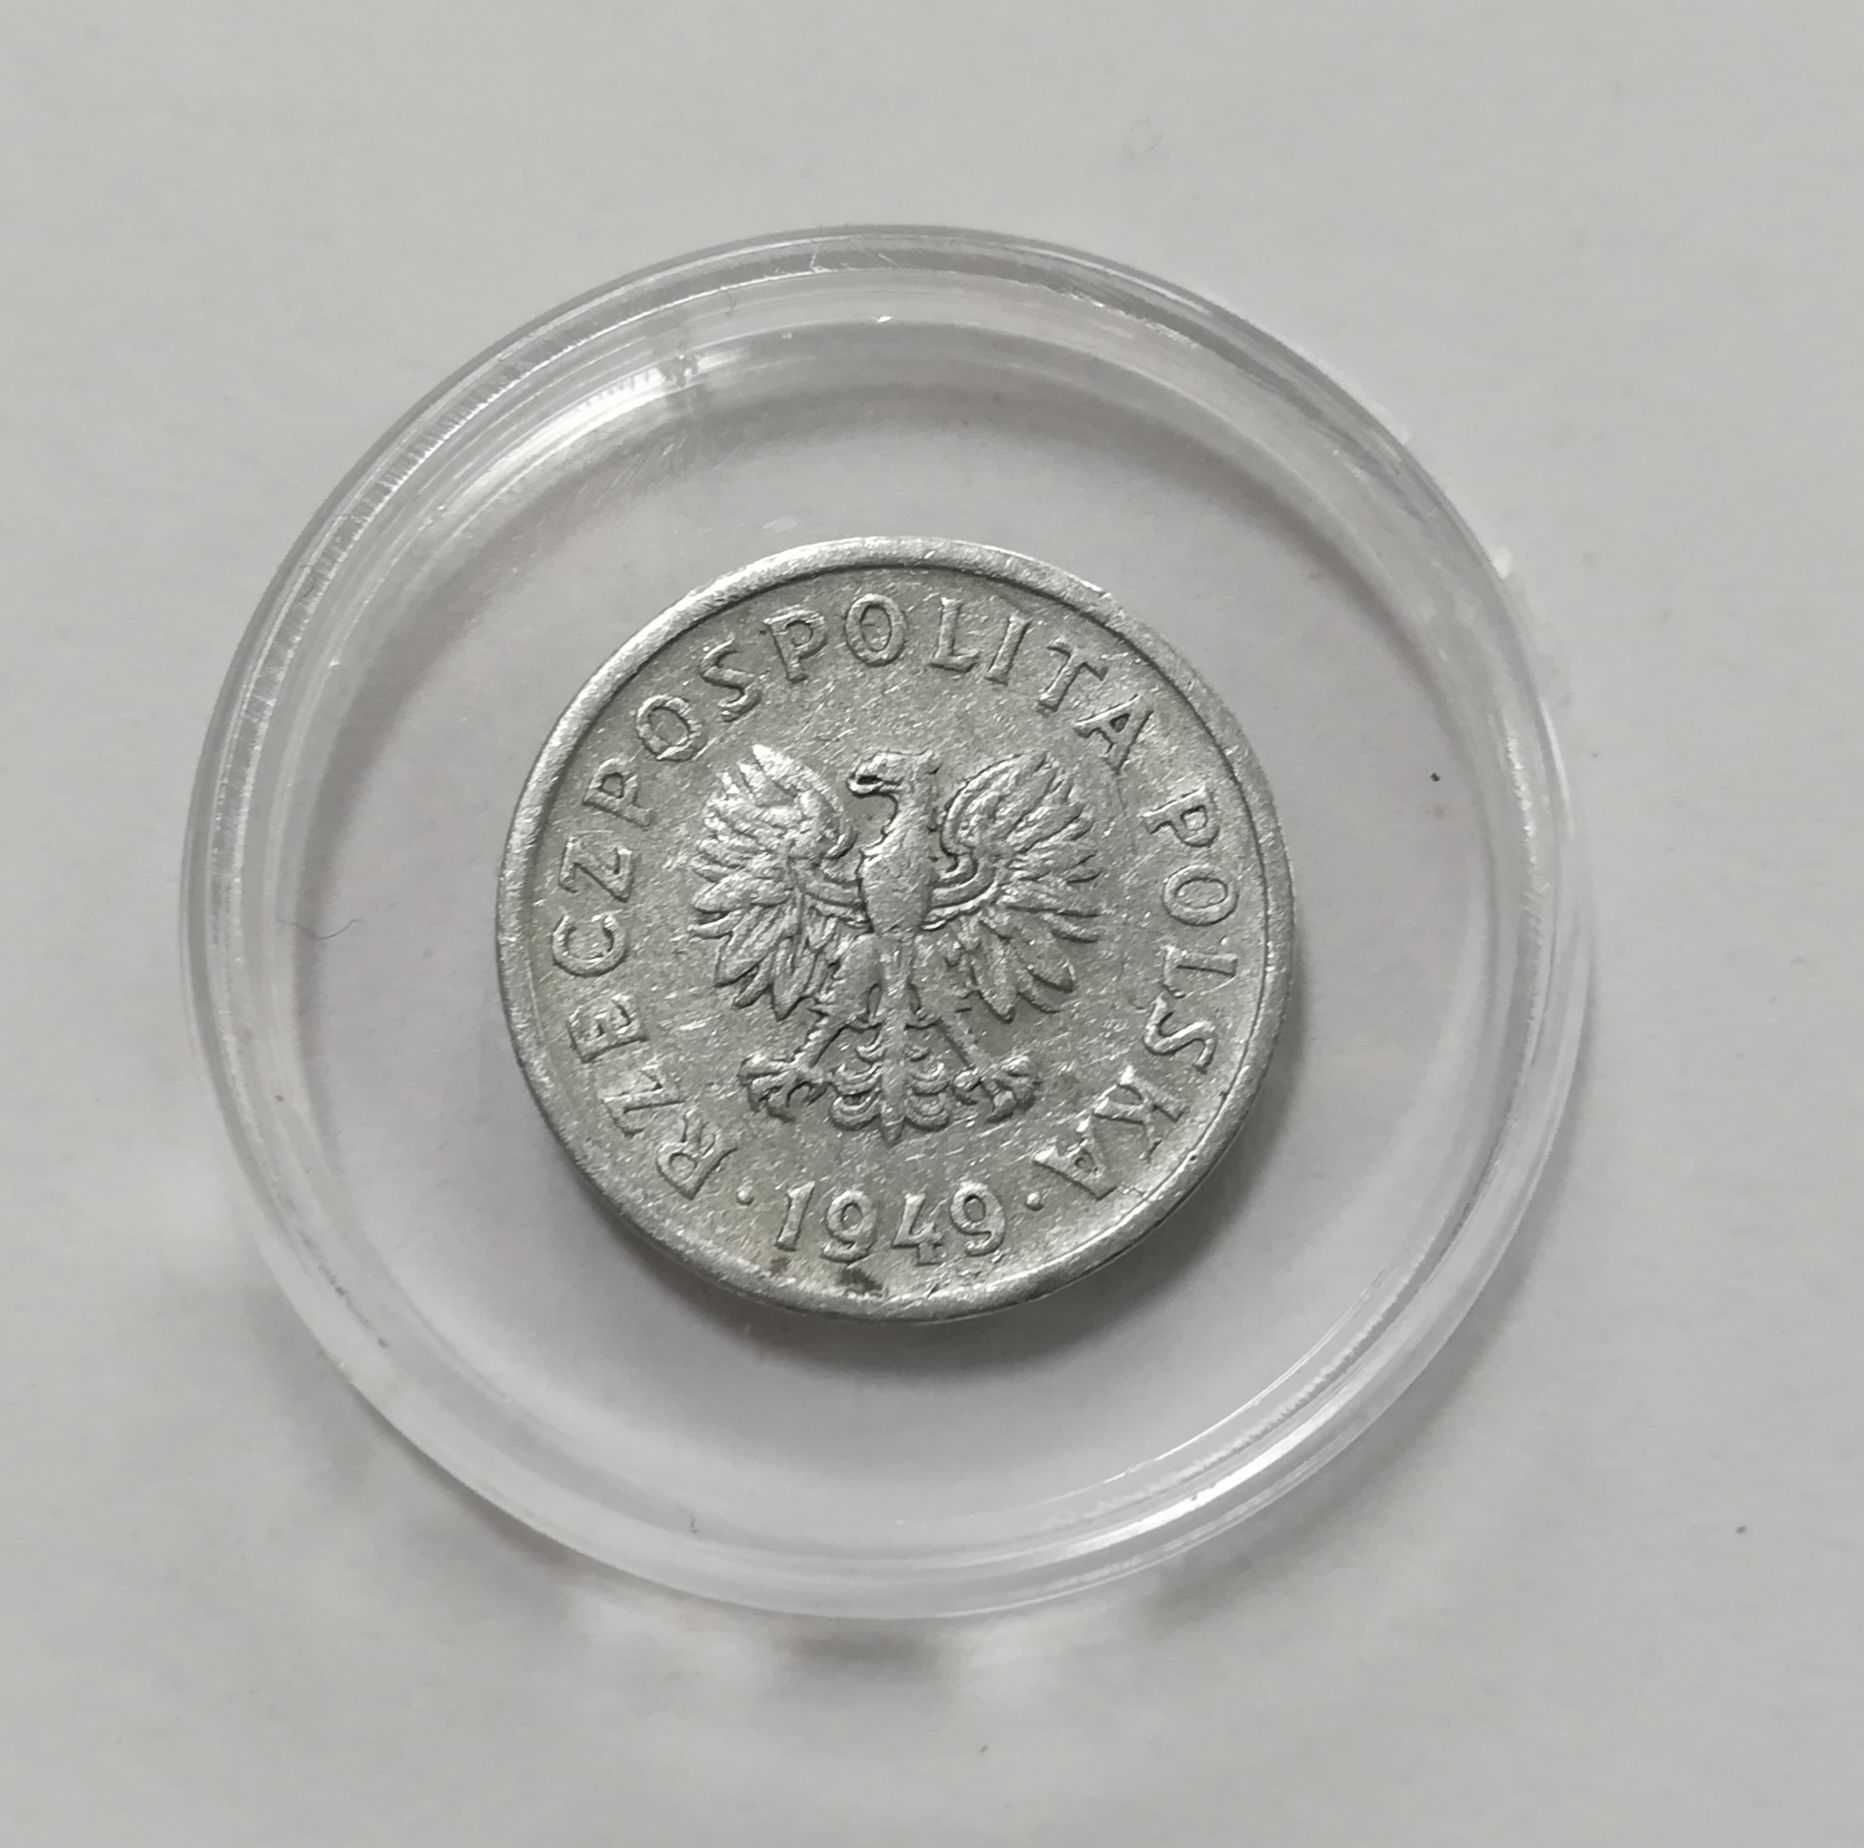 Moneta 10 gr z 1949 r. Stan b. dobry